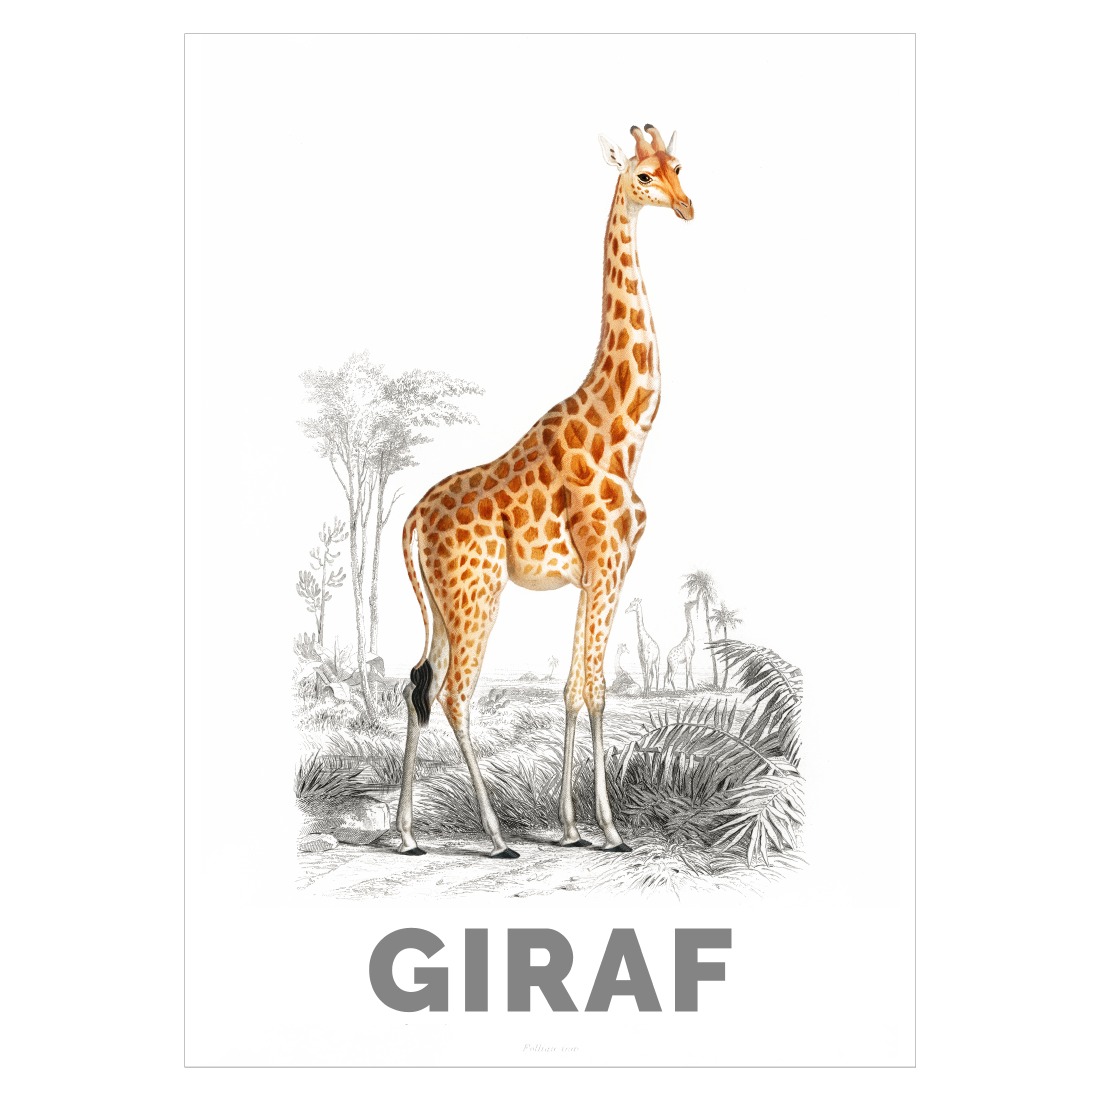 Grafisk plakat med en tegnet giraf og teksten "GIRAF"